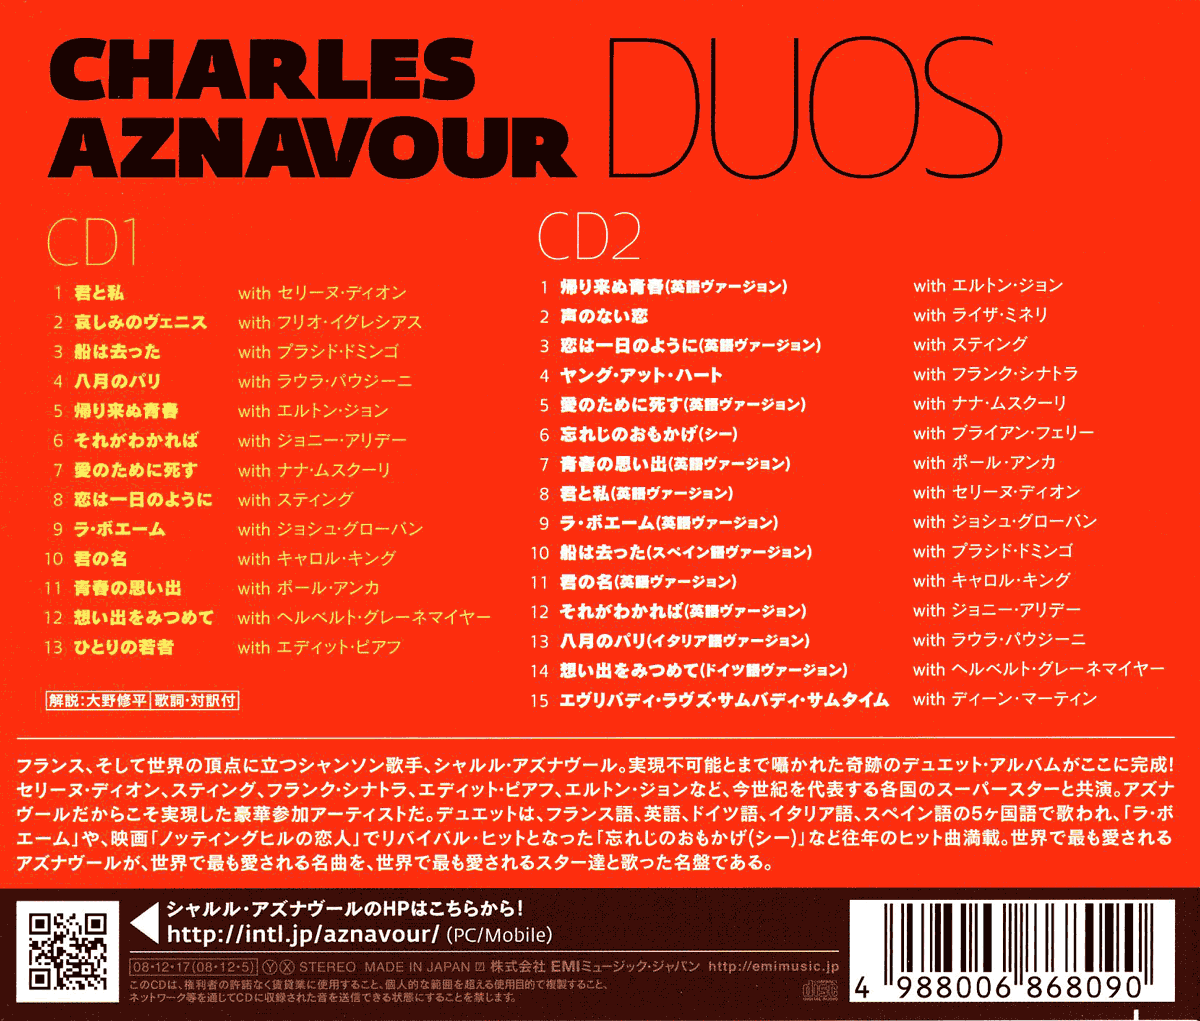 シャルル アズナブール C Aznavour Duos 風のささやき A